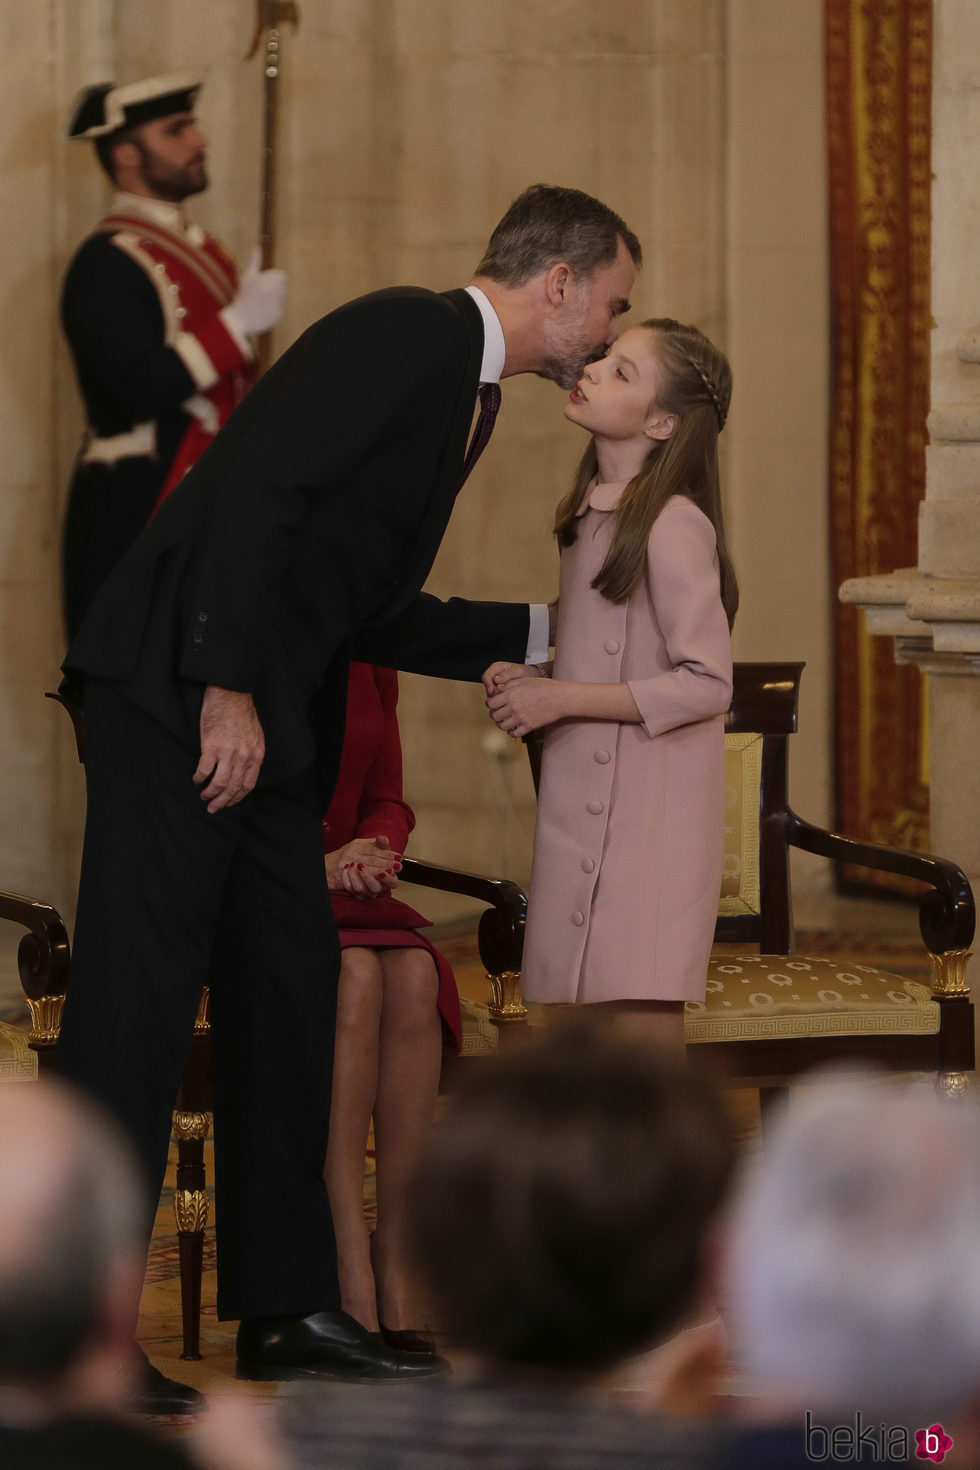 El Rey Felipe besa a la Infanta Sofía en la entrega del Toisón de Oro a la Princesa Leonor